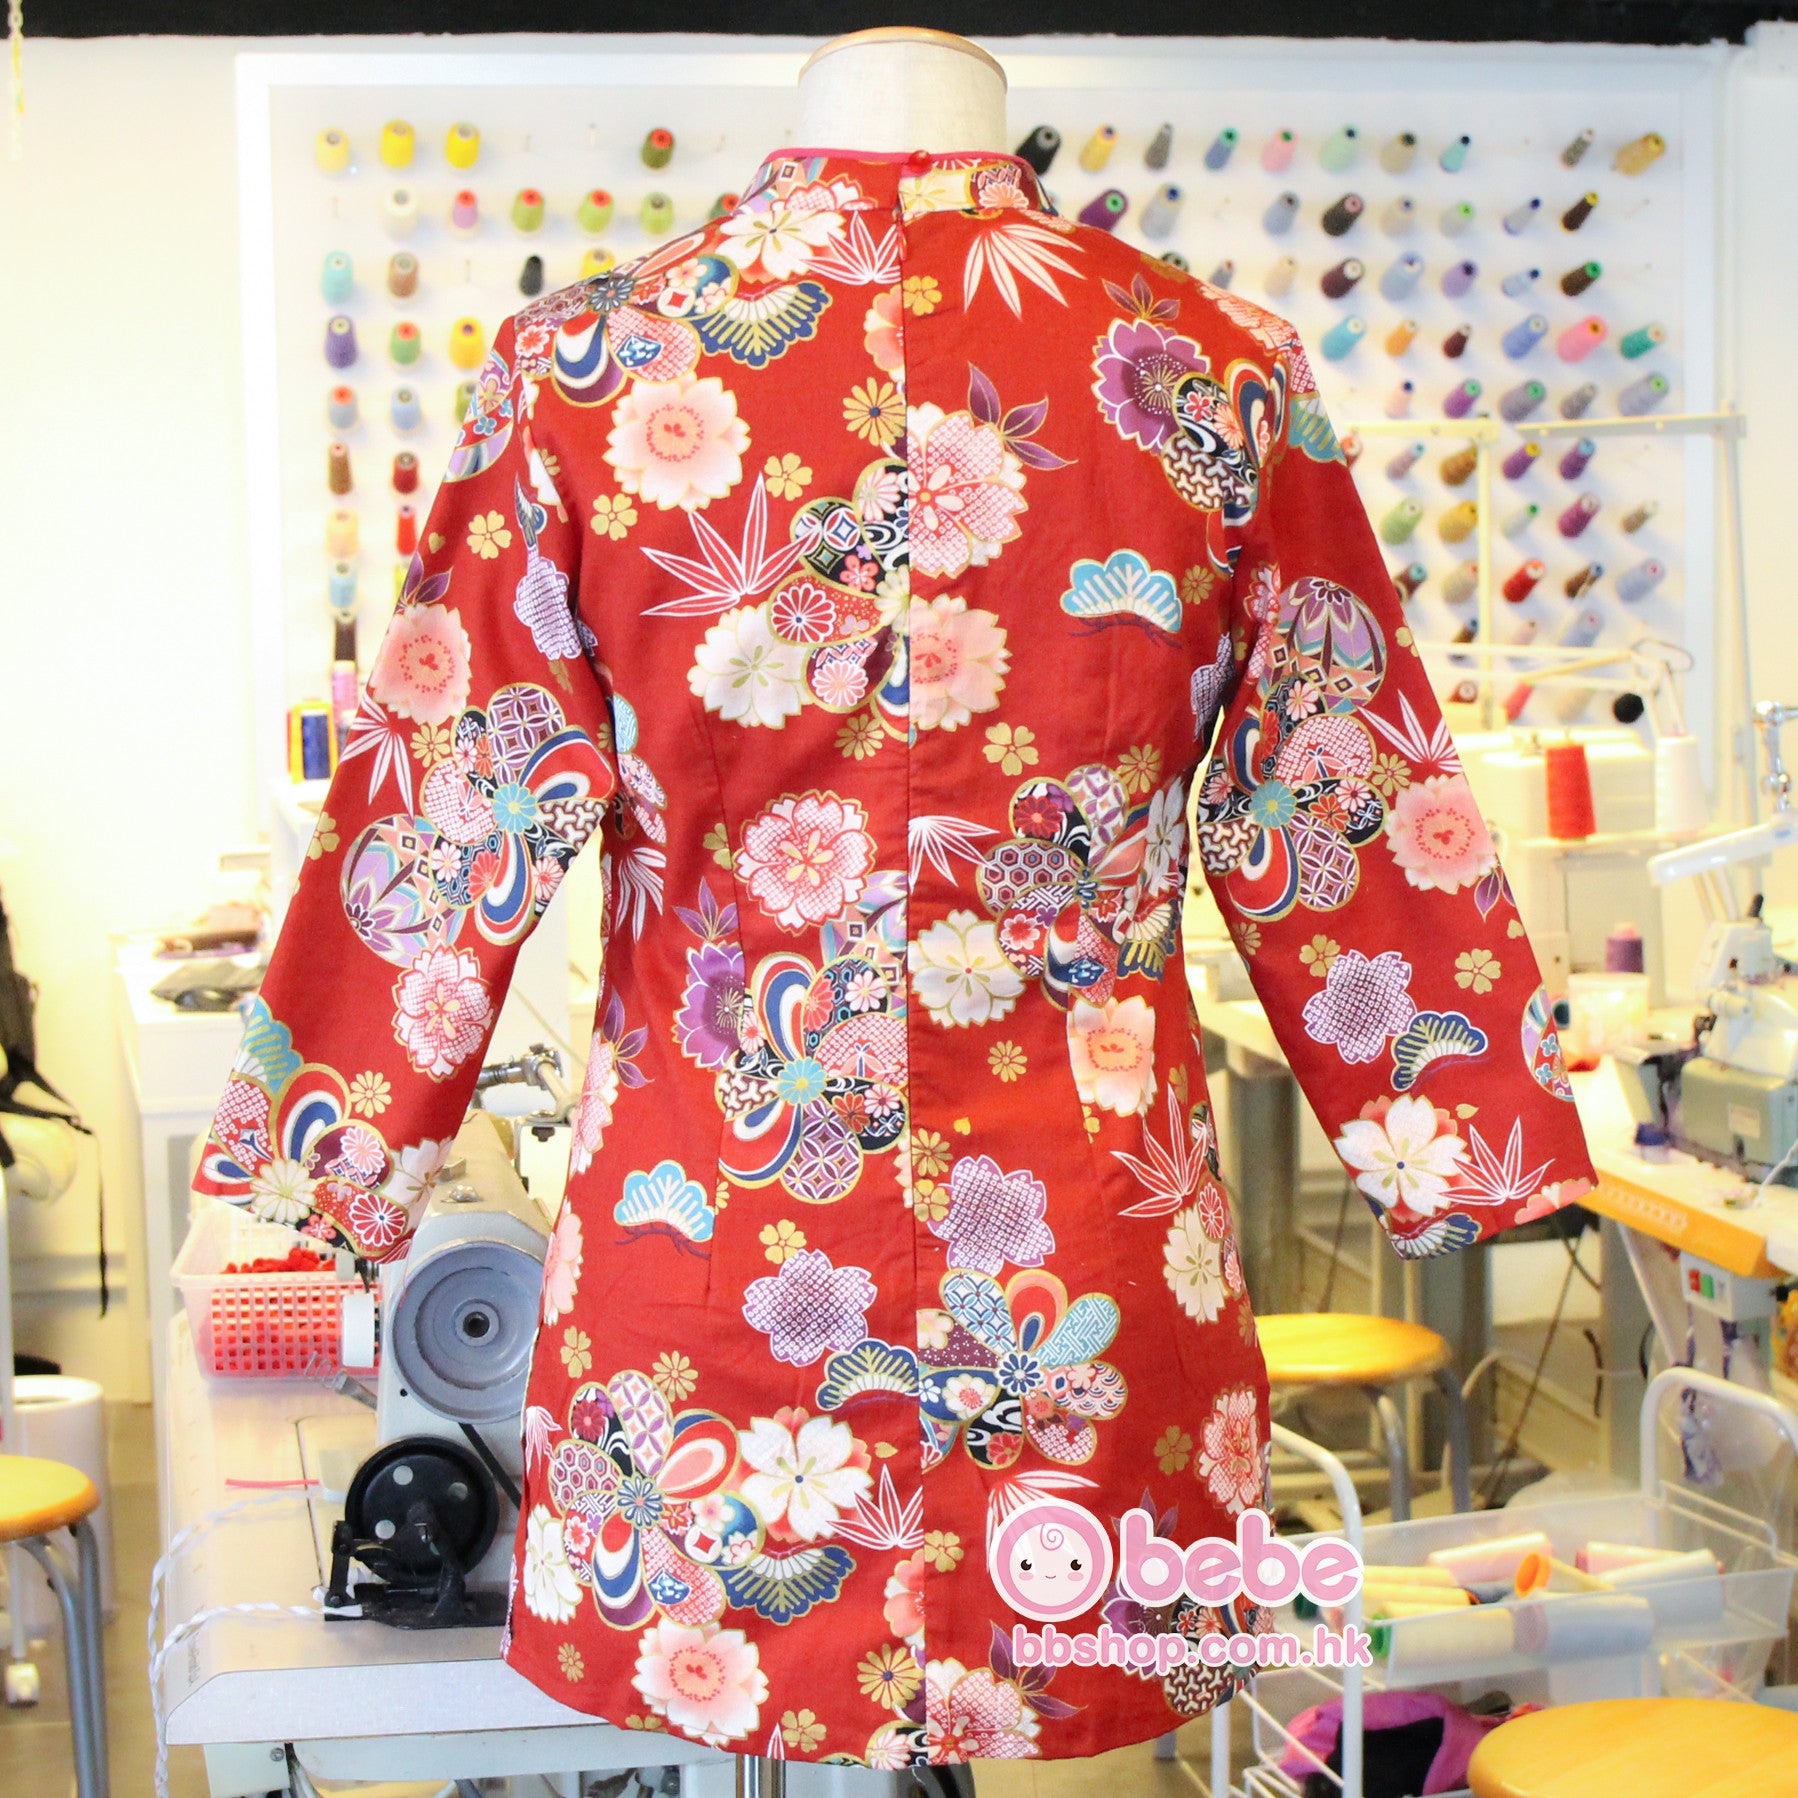 HMD216 日本燙金紅色和風大人版女裝旗袍款中國服